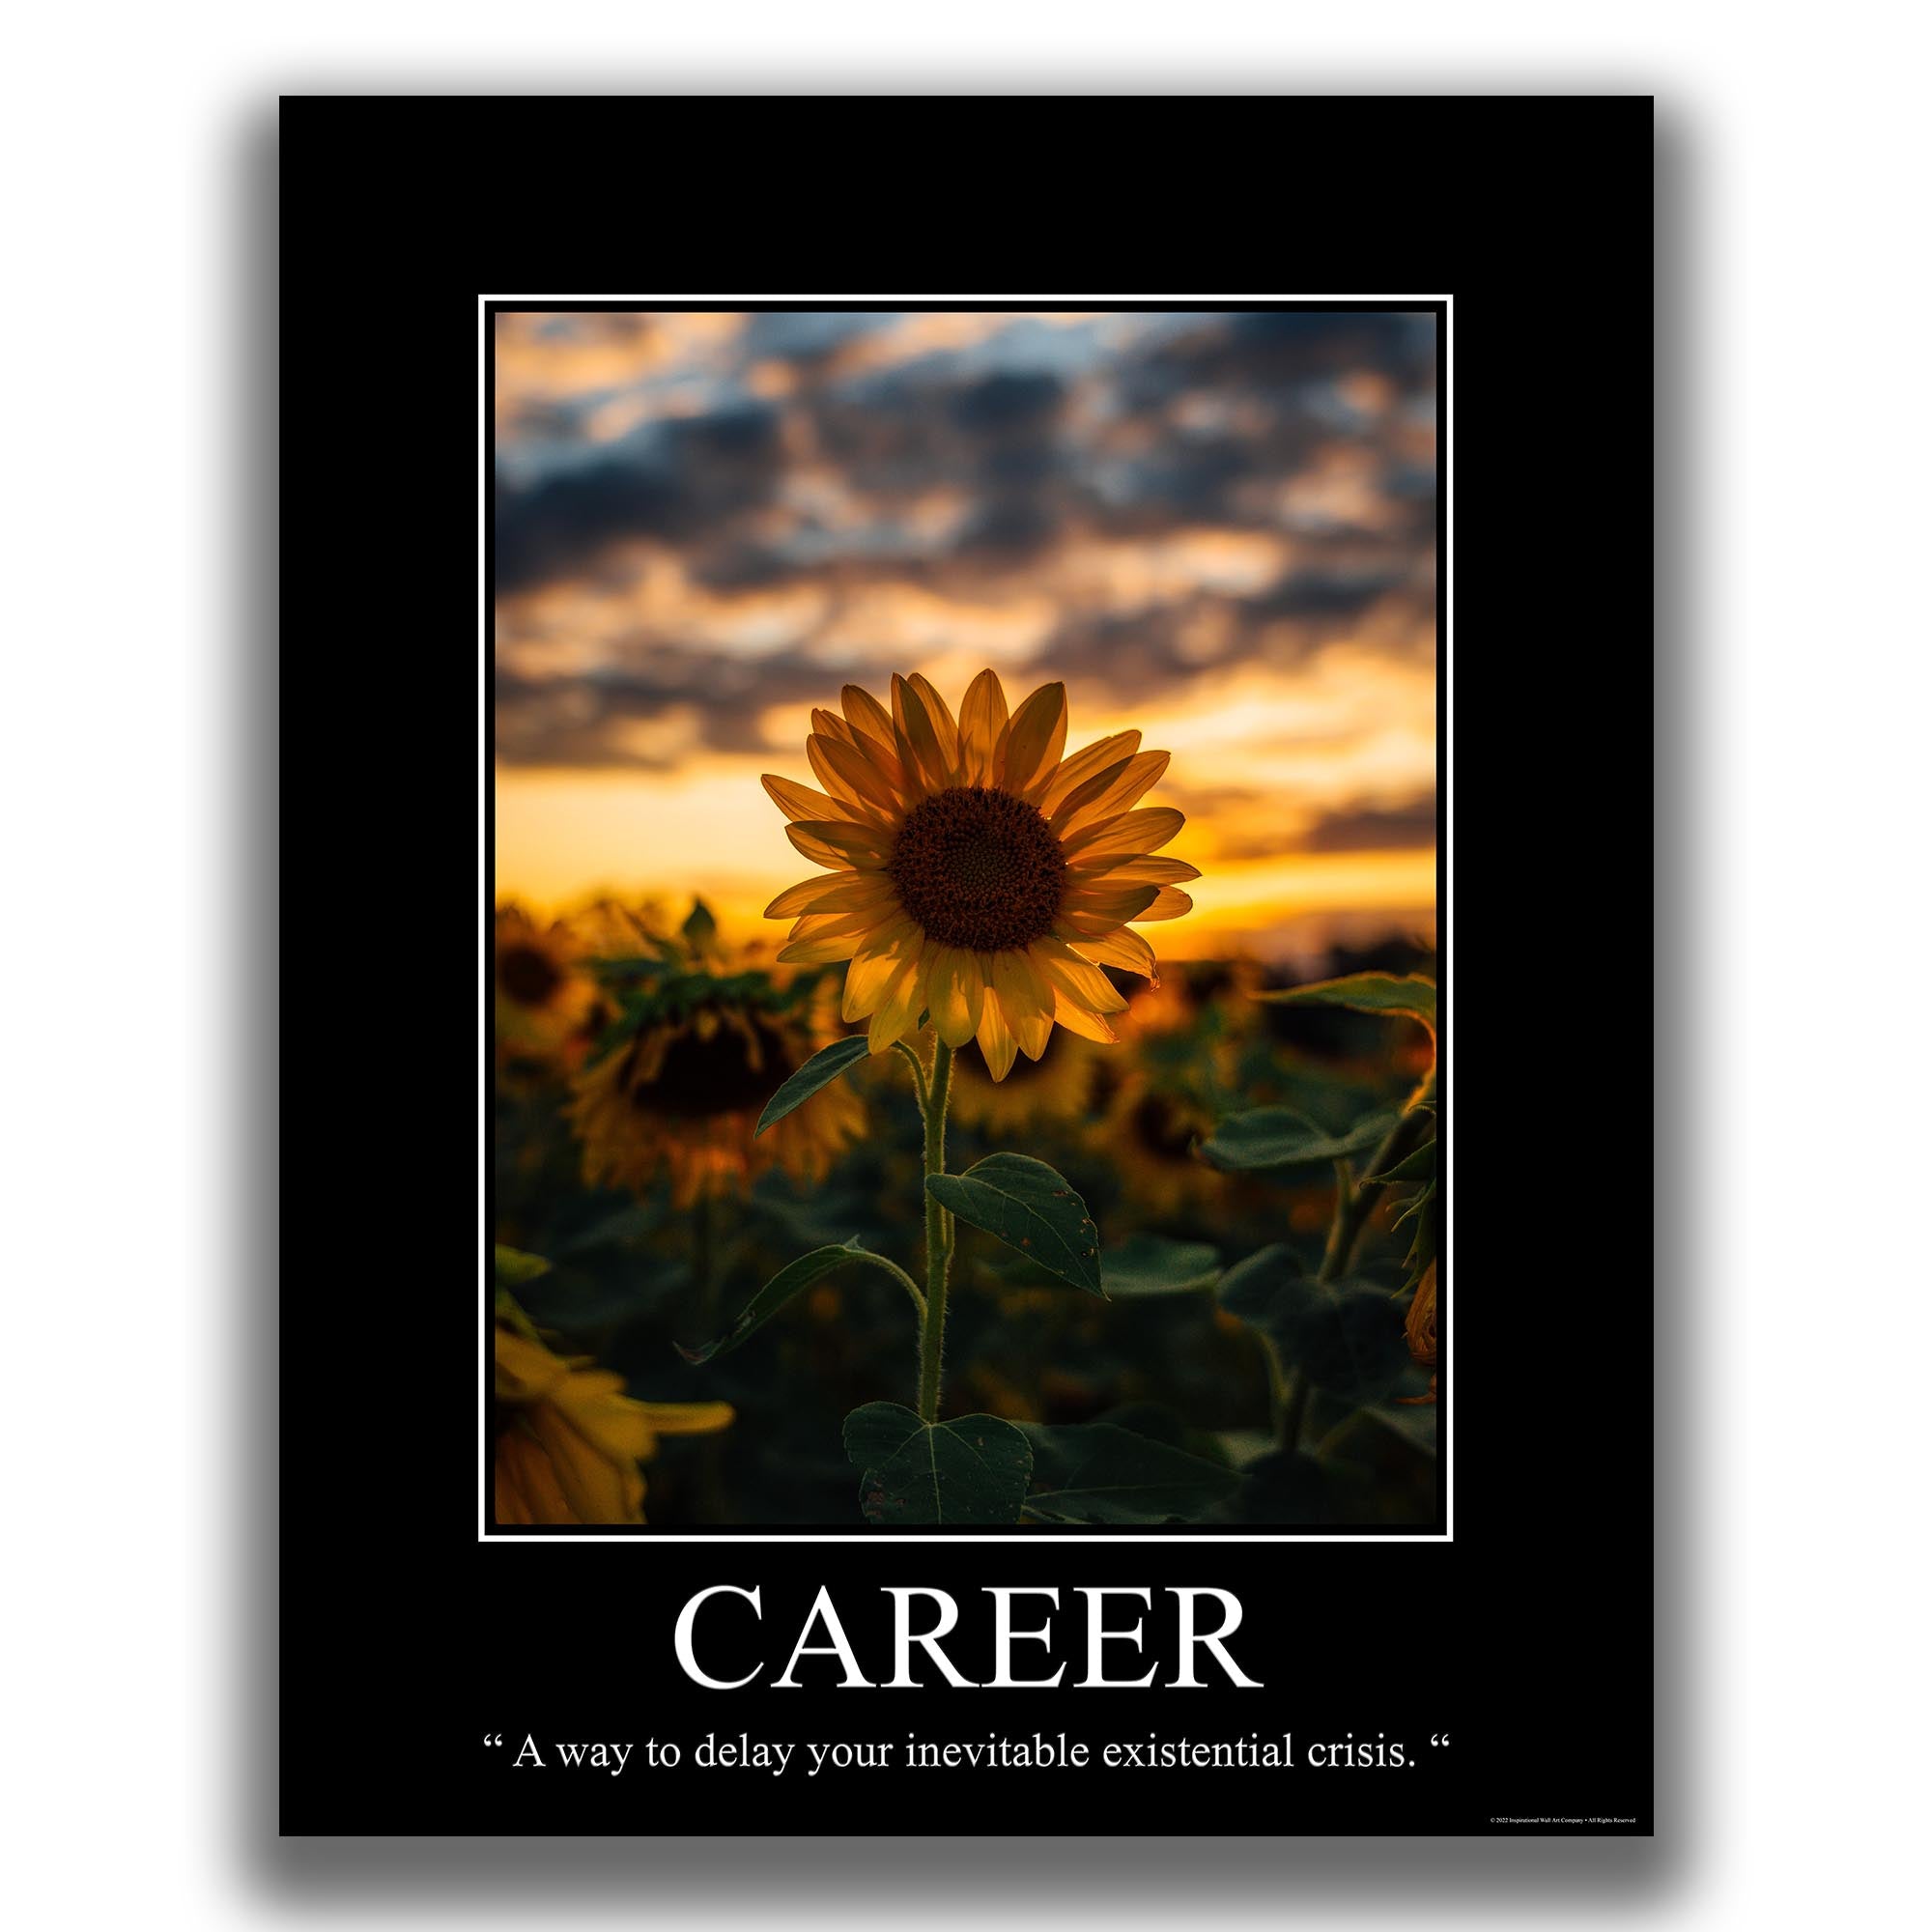 Career - Demotivational Poster